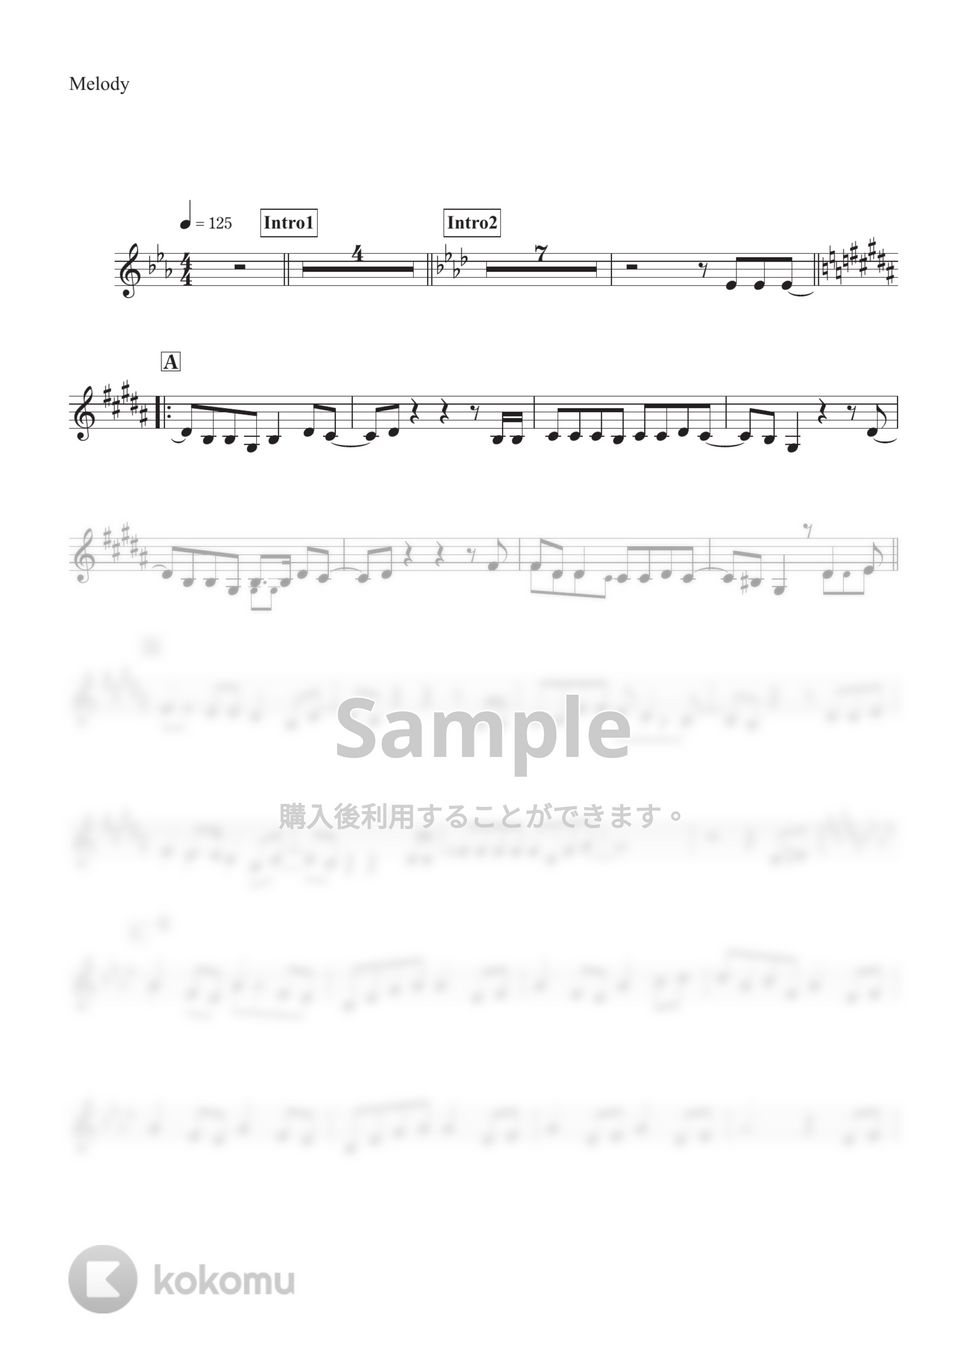 乃木坂46 - I see... (メロディー譜面inC) by ALT Music